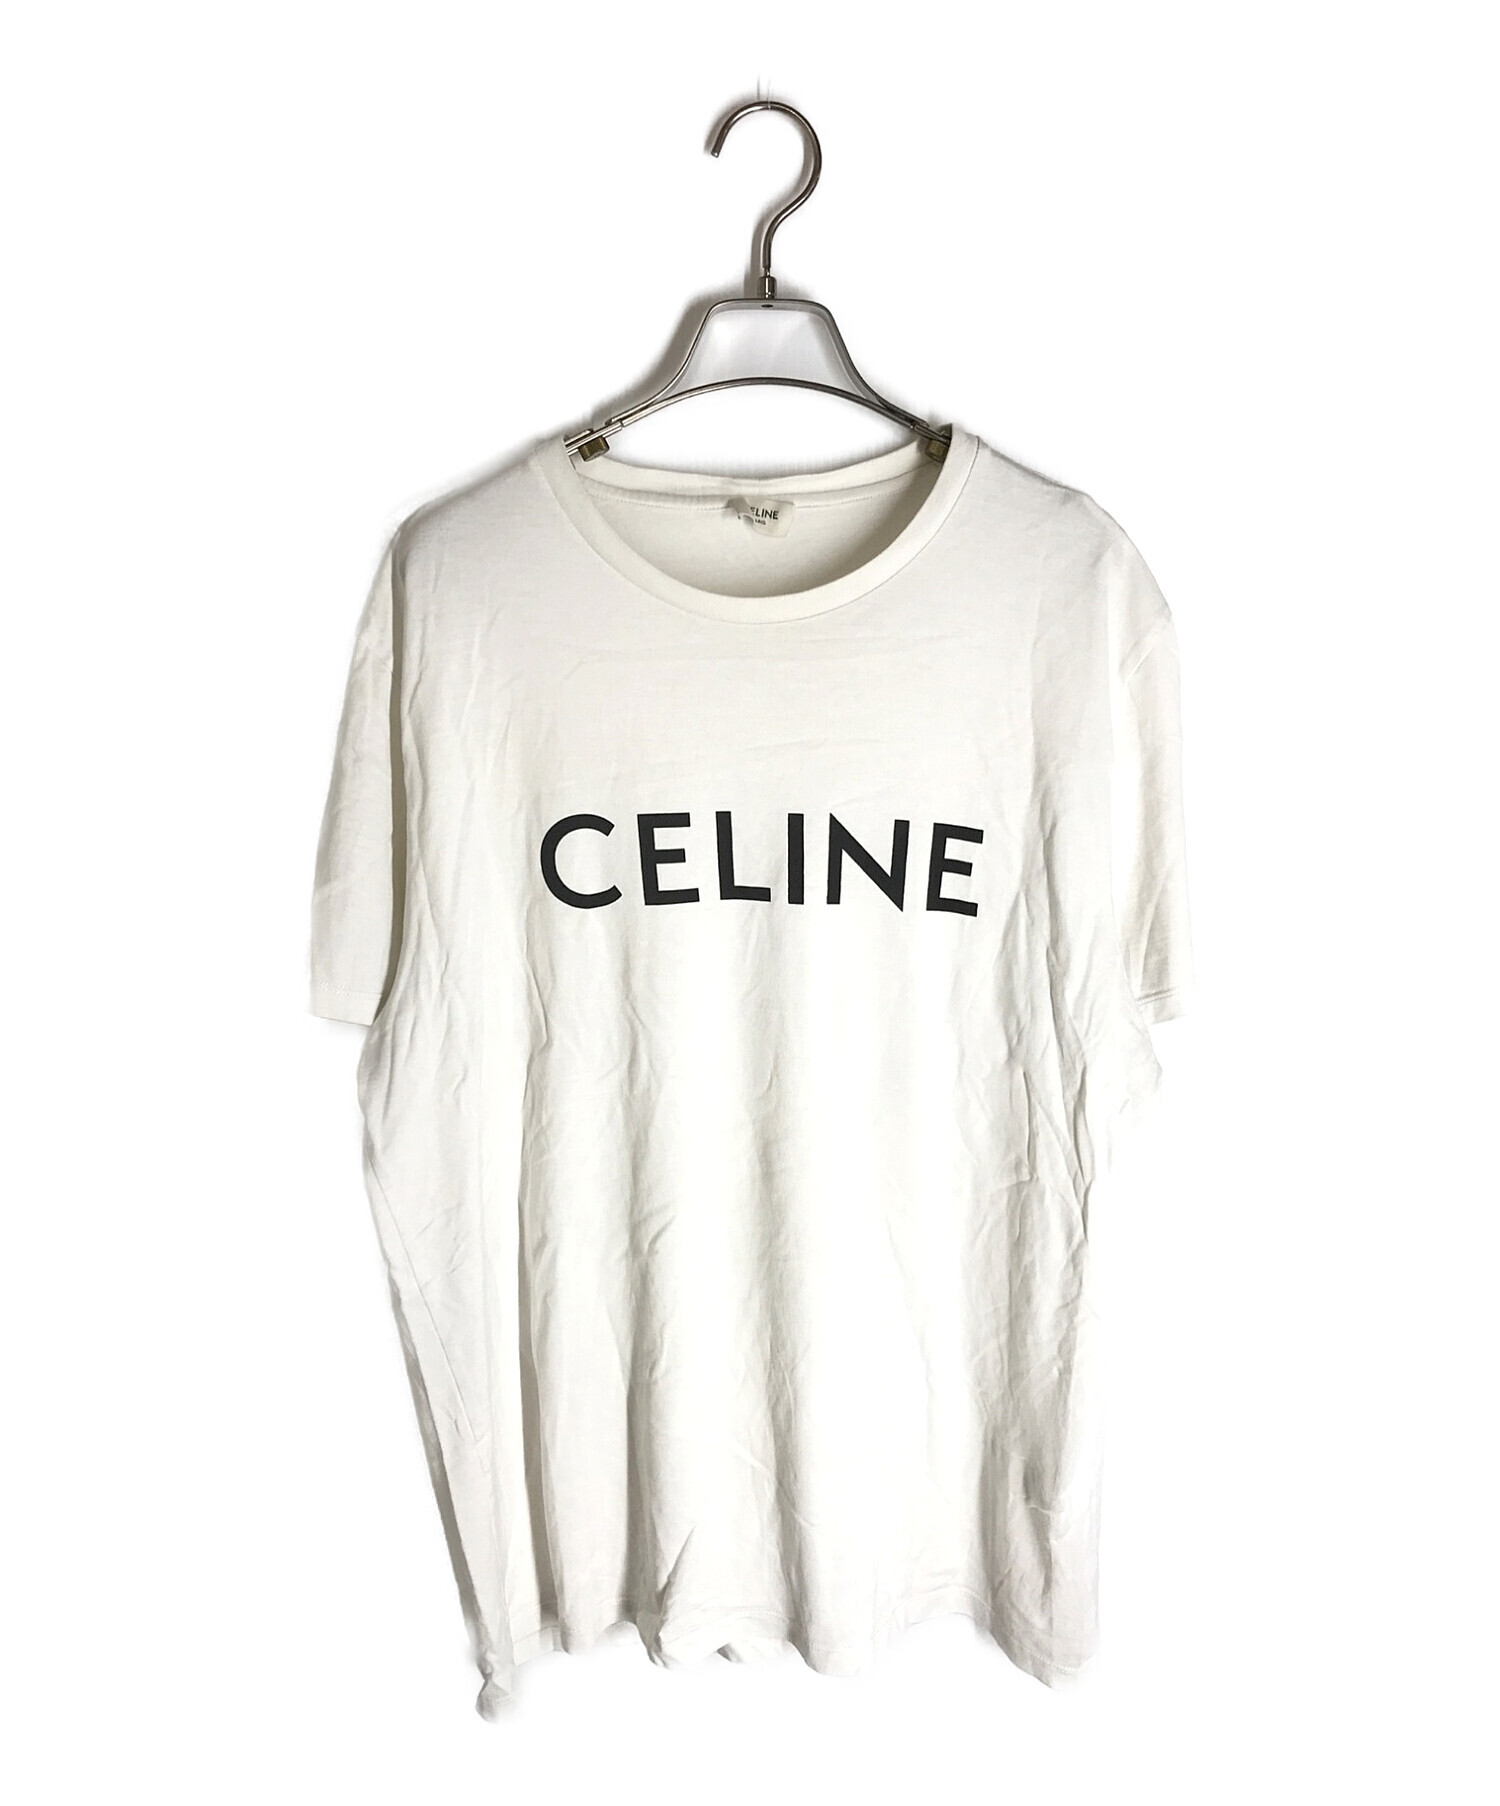 CELINE セリーヌ ロゴTシャツ ホワイト サイズM